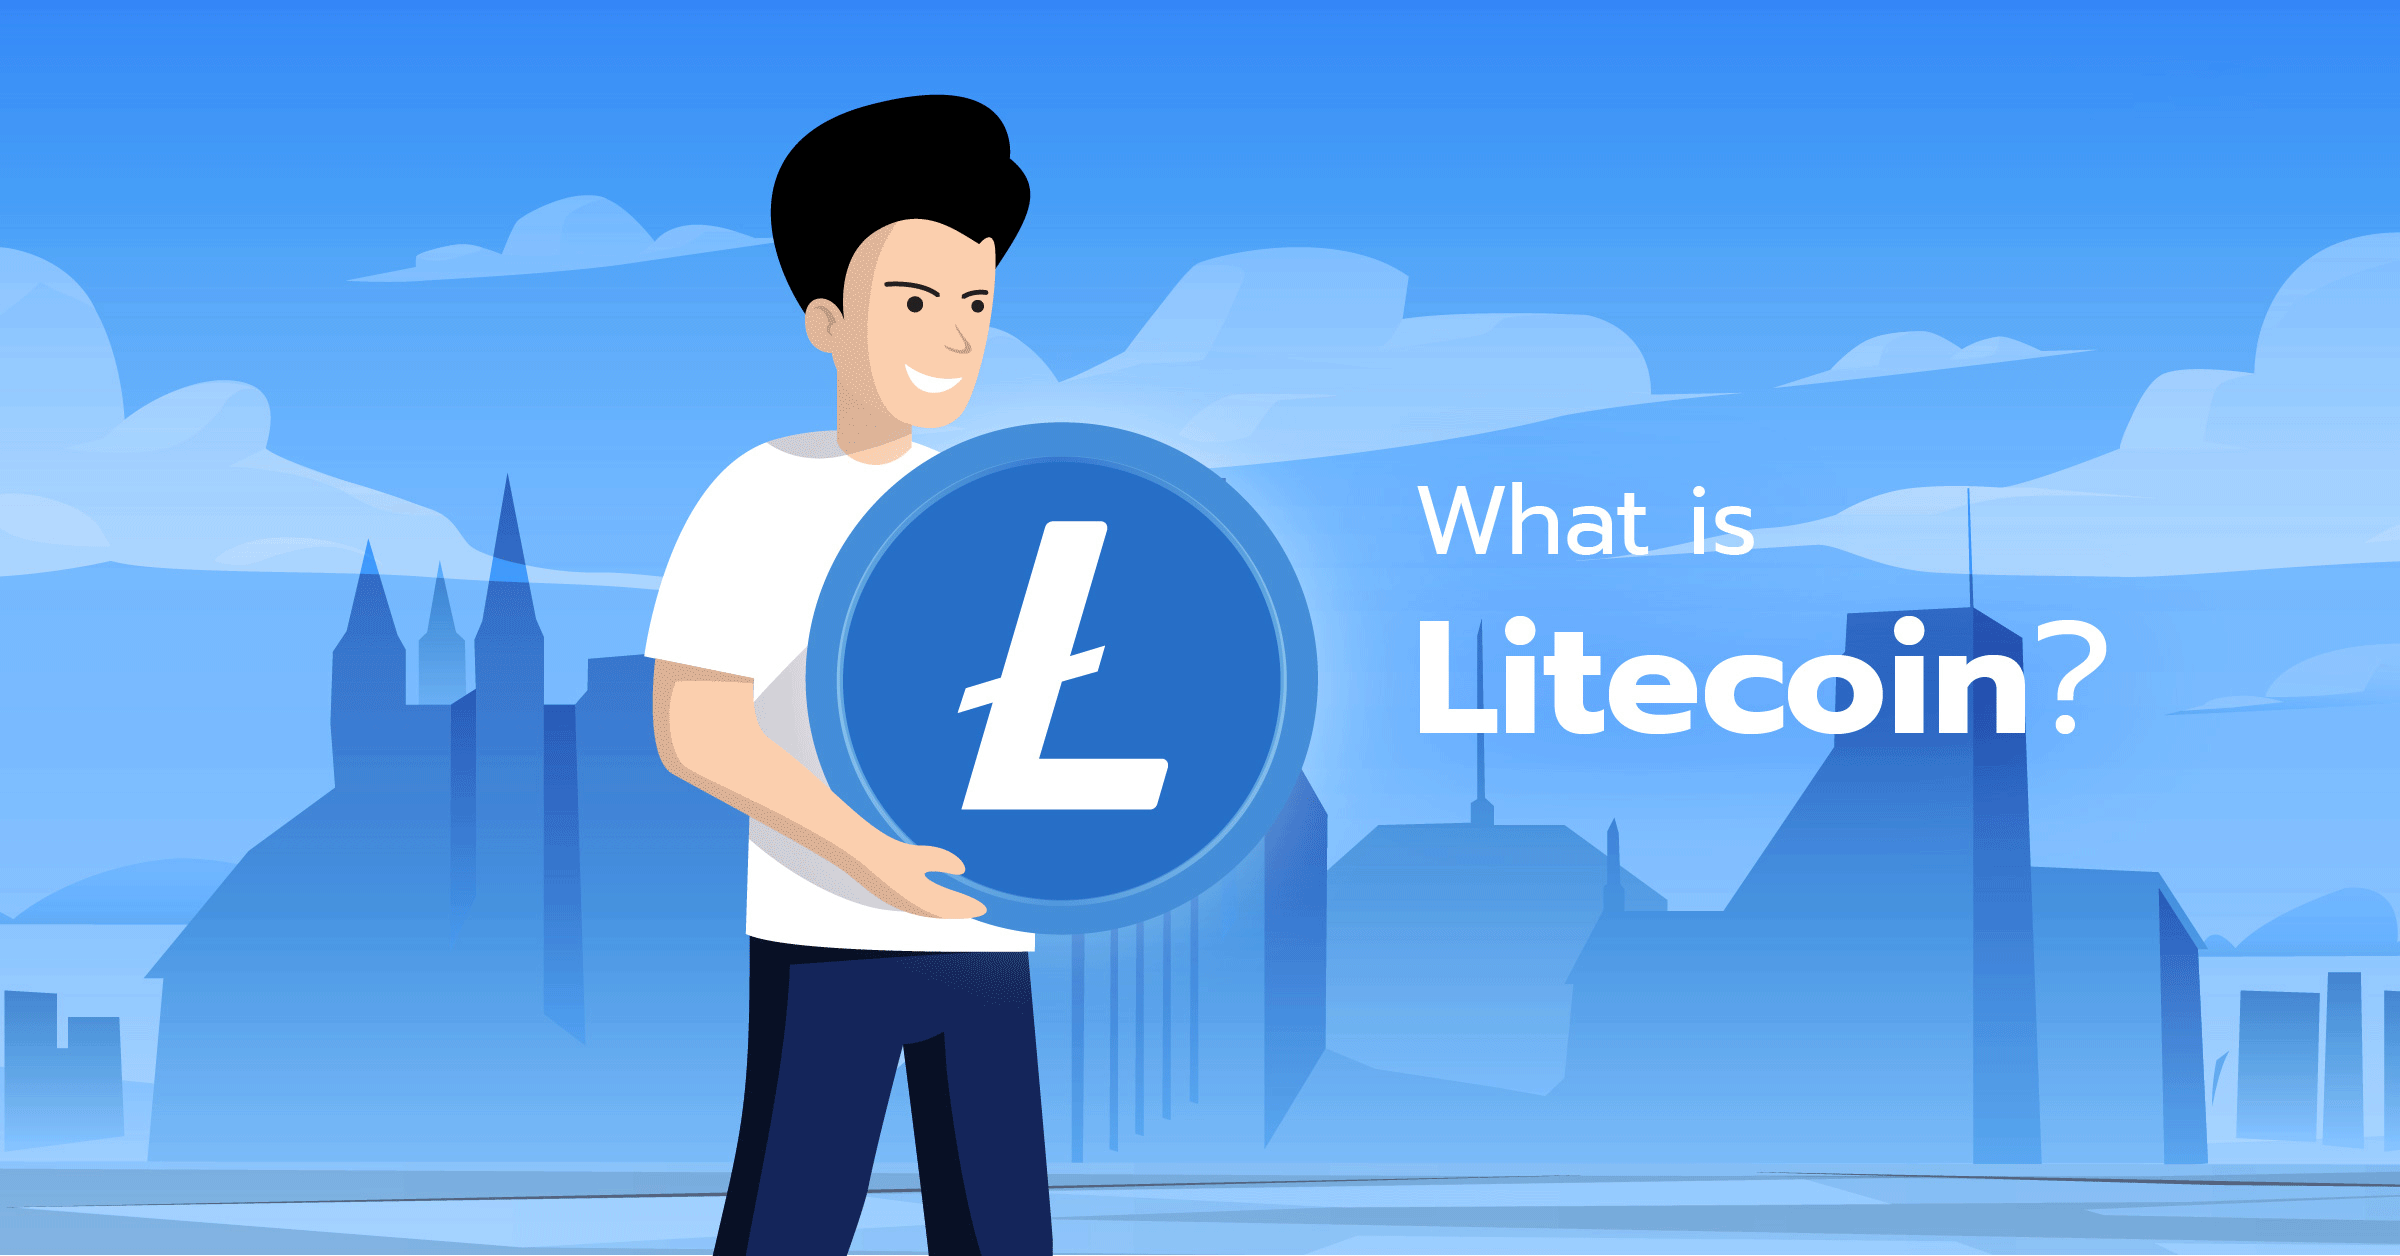 ارز دیجیتال لایت کوین (Litecoin) - LTC چیست؟